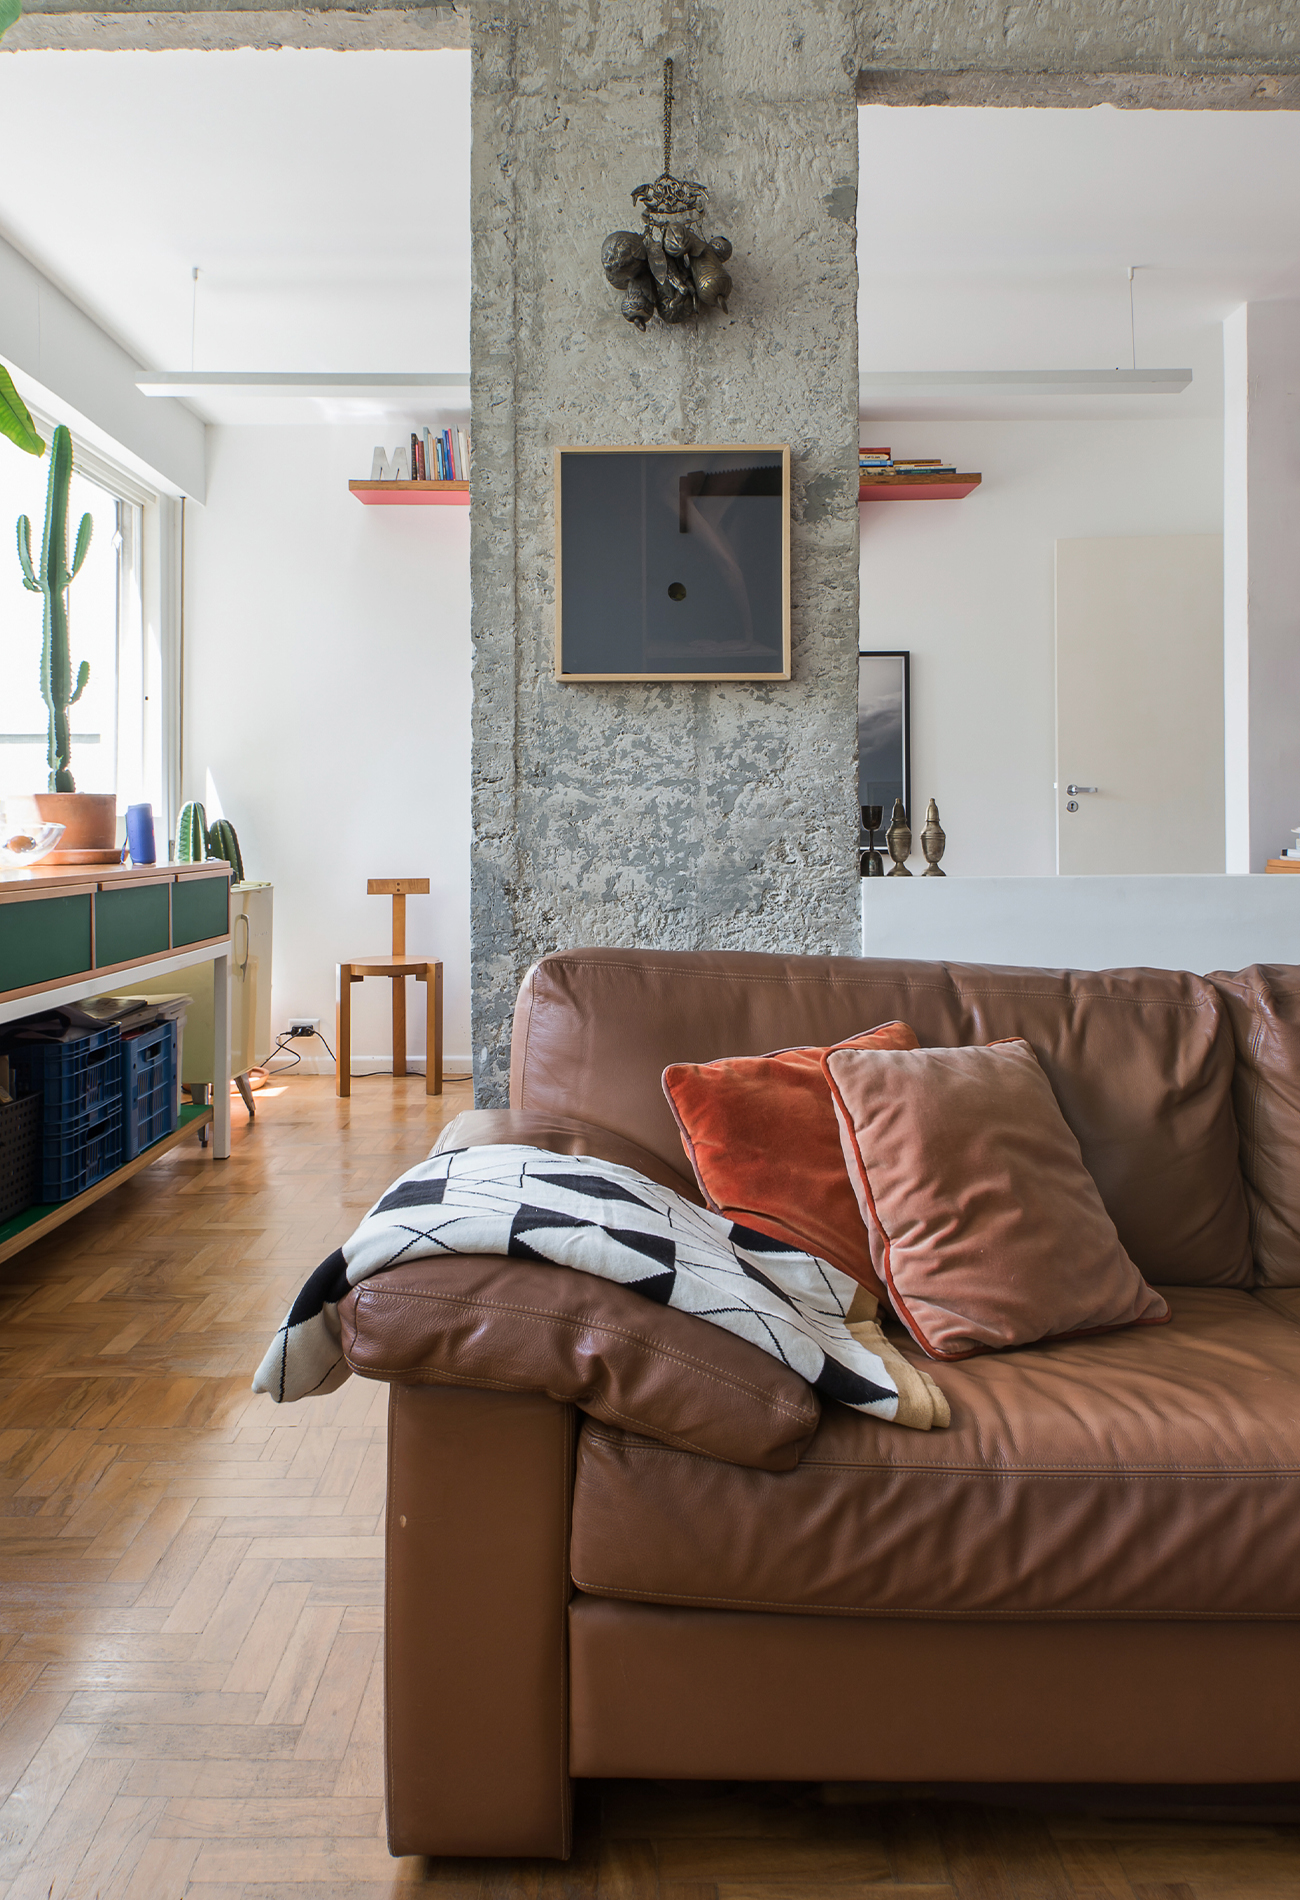 Apartamento reformado com cozinha integrada e decoração colorida